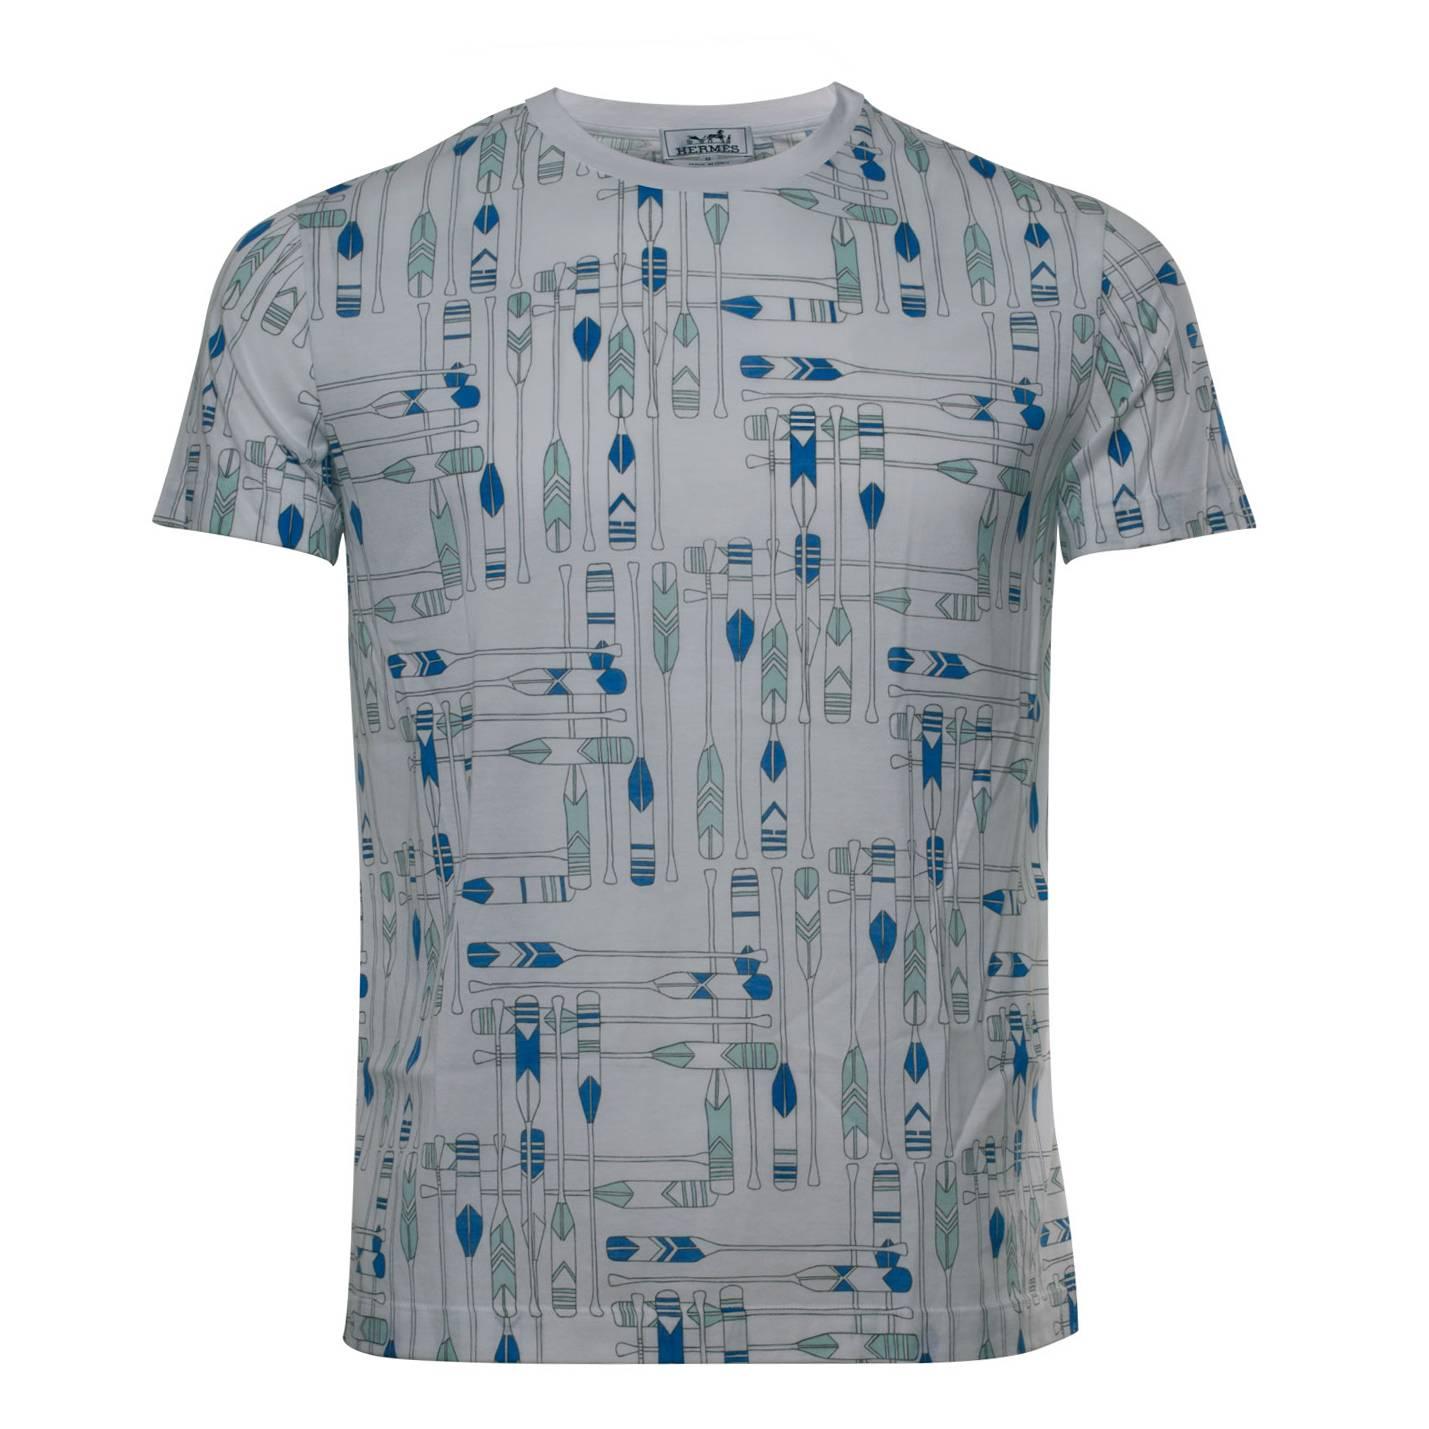 Hemes T-shirt Pagaie Size M Color Bleu Sport 2016. For Sale